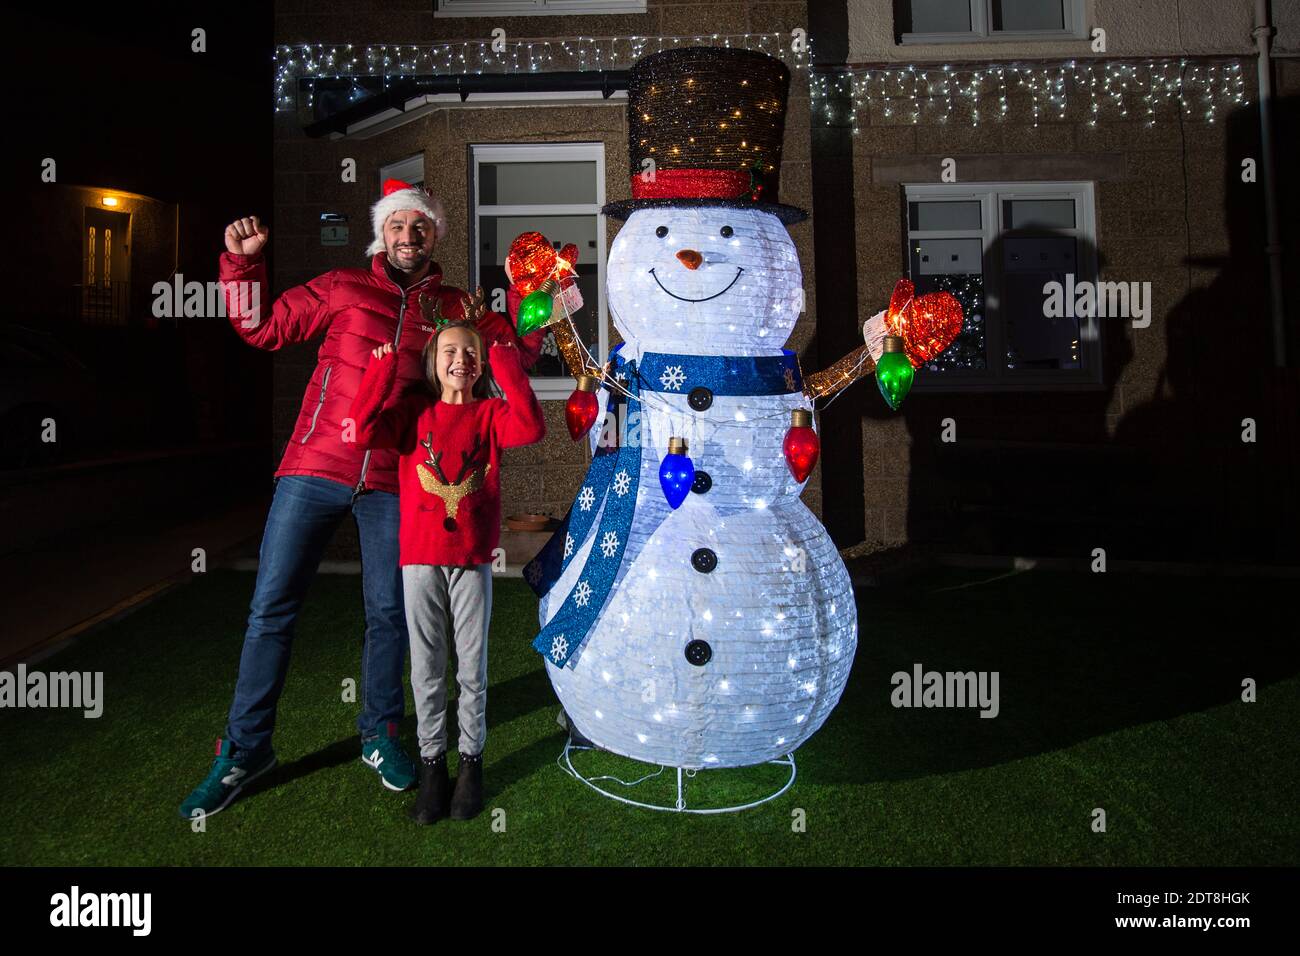 Glasgow, Escocia, Reino Unido. 21 de diciembre de 2020. Foto: Gigante muñeco de nieve. Los residentes de Balarnock pusieron un espectáculo de luces de Navidad fantástico. Los residentes de Balarnock tienen un gran sentido de la comunidad, y les encanta difundir la alegría de Navidad poniendo en una exhibición festiva que difunde el mensaje de Navidad. En un año en el que COVID19 ha dominado los titulares durante casi un año, a la gente le gusta ver luces coloridas y disfrutar de la temporada festiva. Crédito: Colin Fisher/Alamy Live News Foto de stock